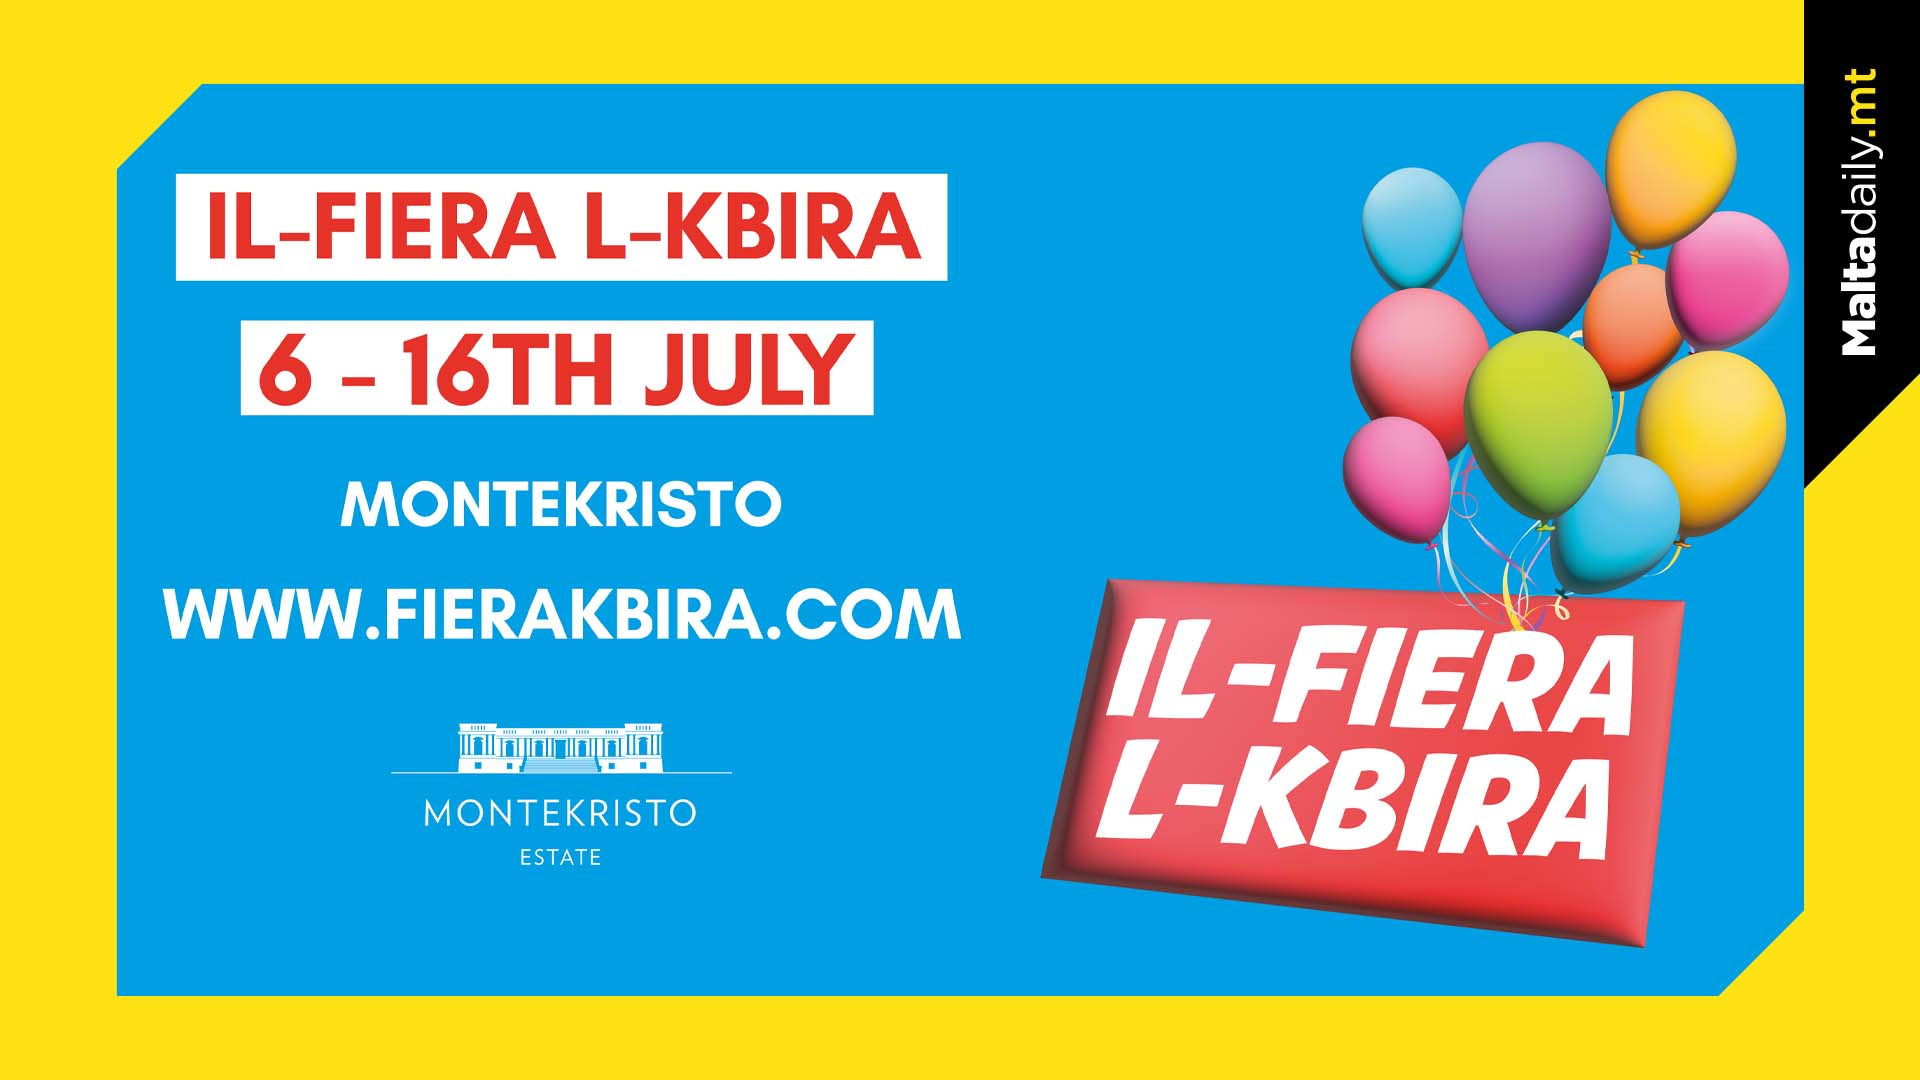 Il-Fiera l-Kbira Returns This July!